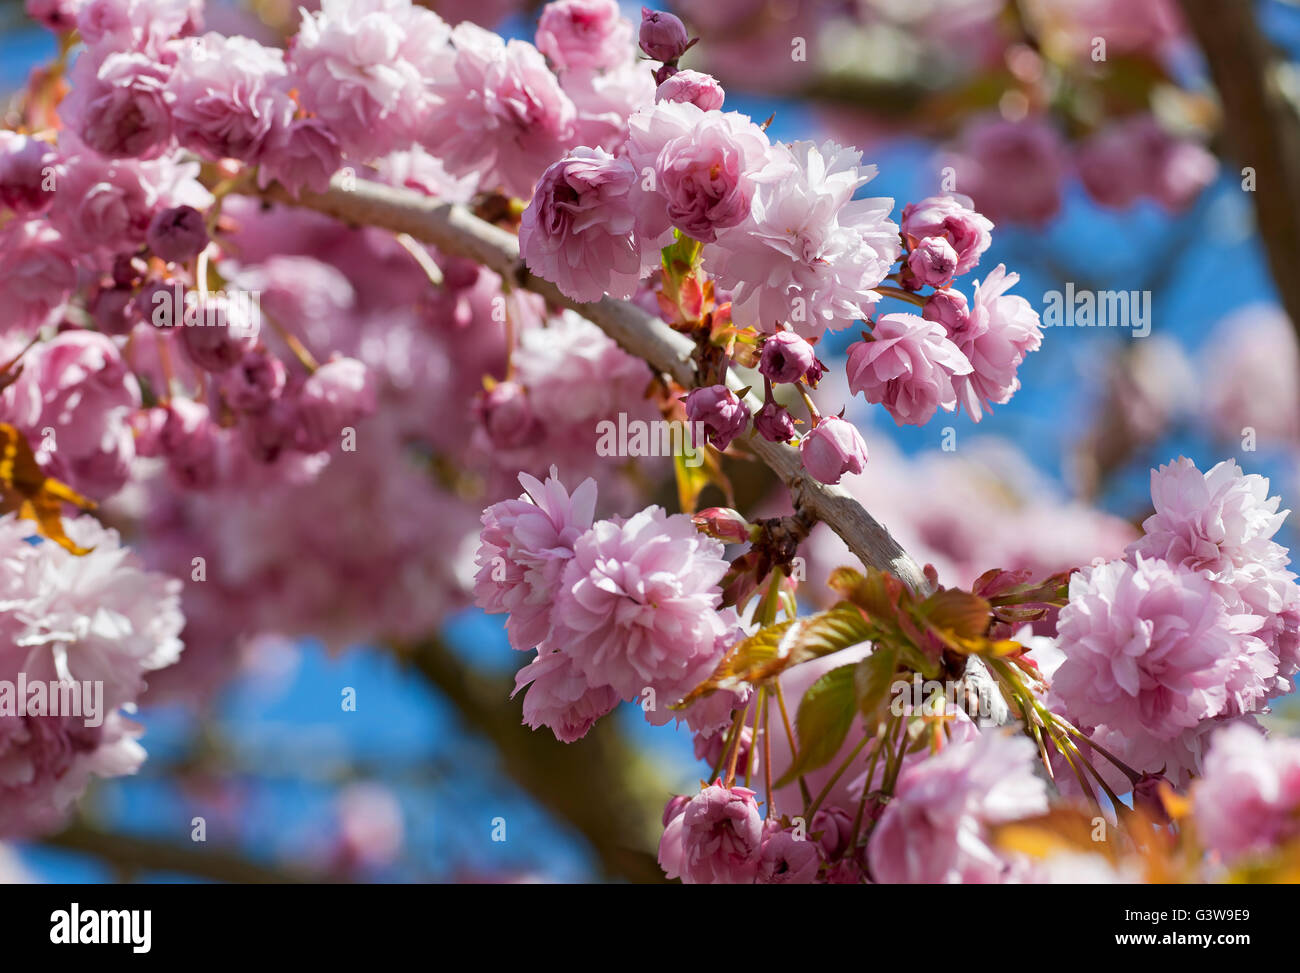 Gros plan de fleur rose fleurs ornementales de cerisier fleurs Floraison au printemps Angleterre Royaume-Uni Royaume-Uni Grande-Bretagne Banque D'Images